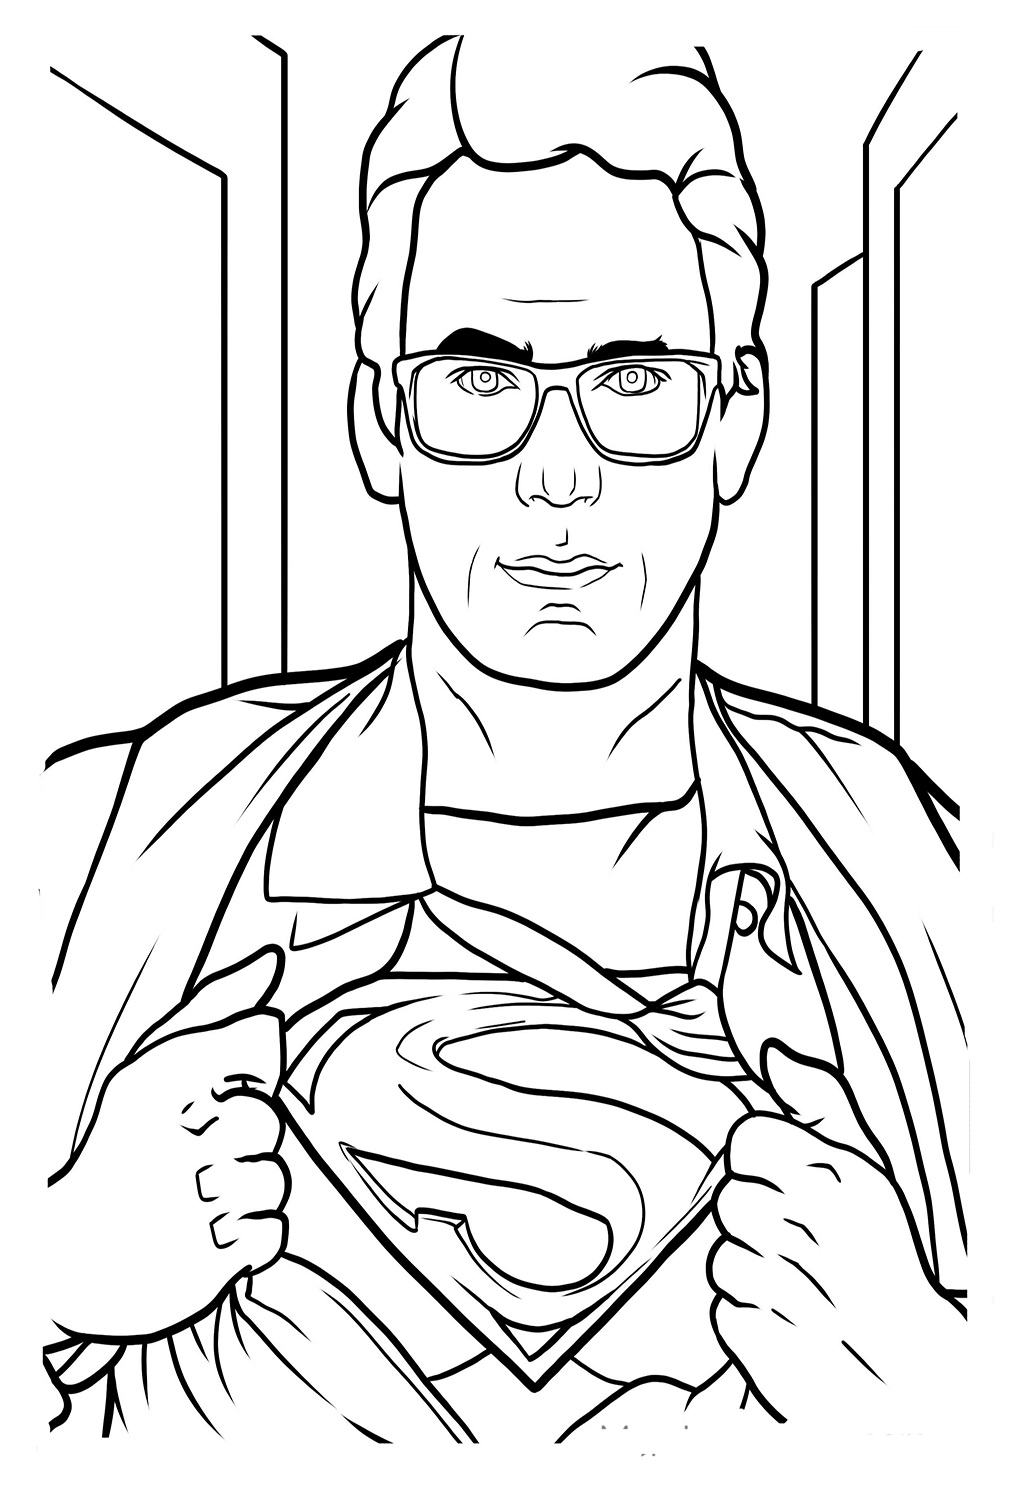 Clark Kent Superman kleurplaat van Superman